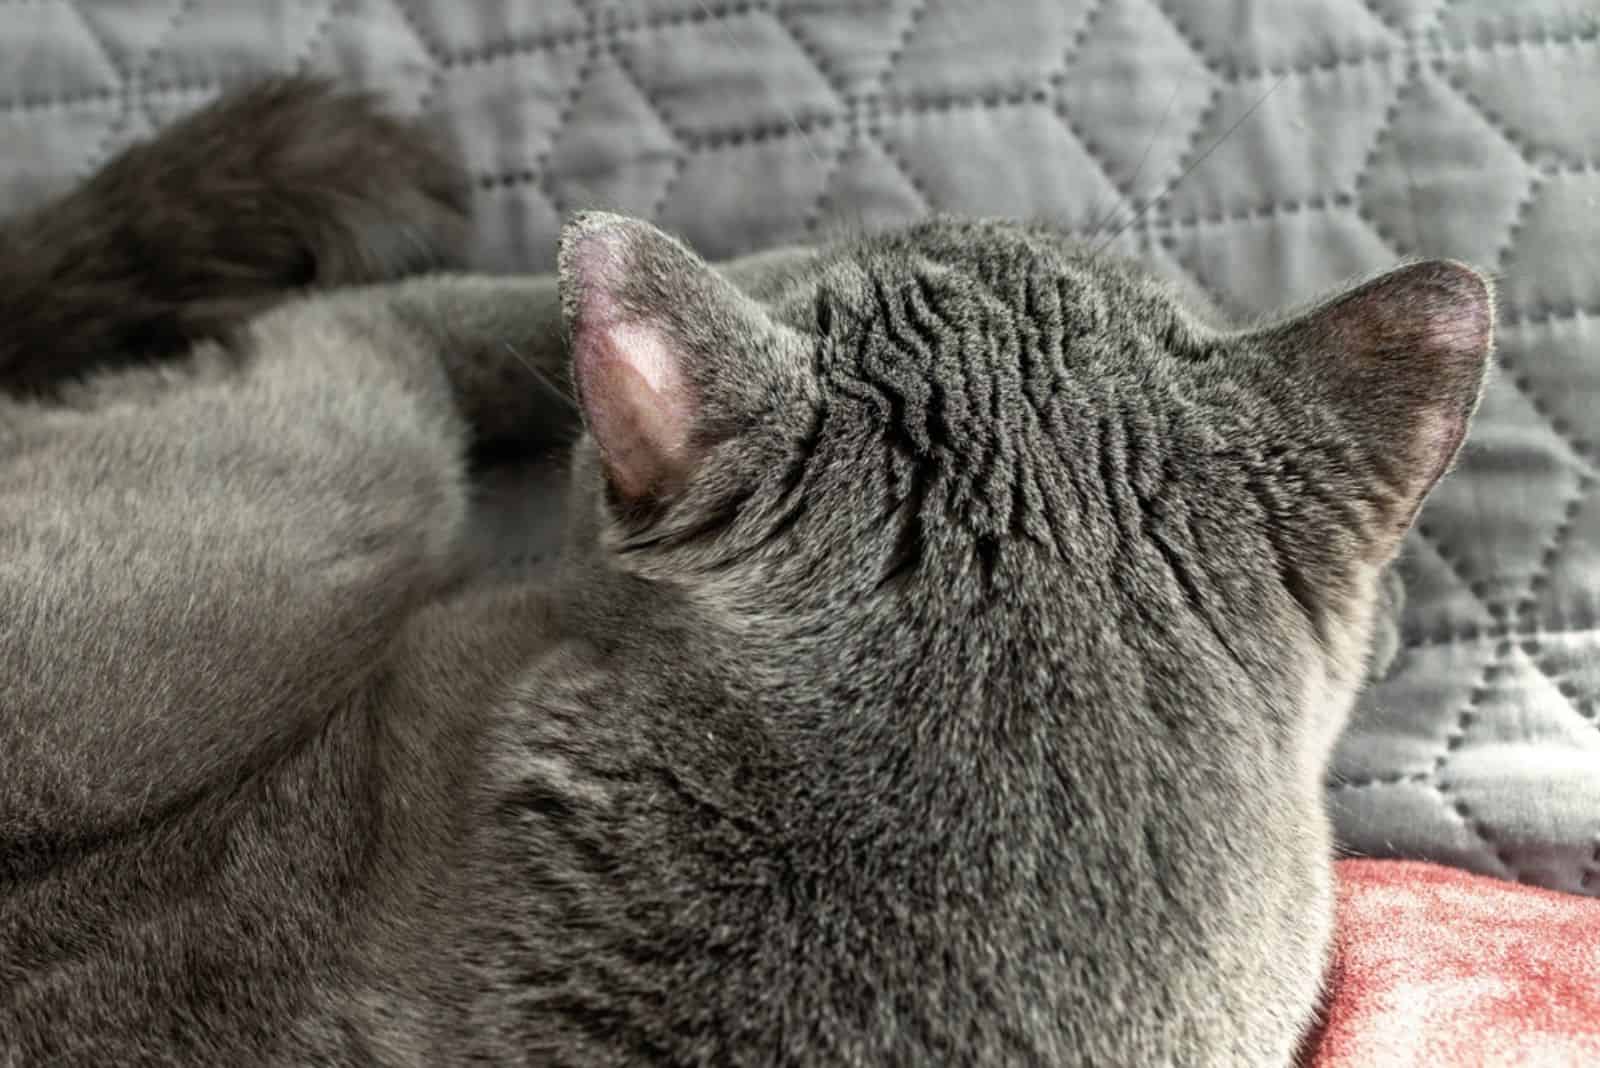 Ringworm op de oren van een kat.